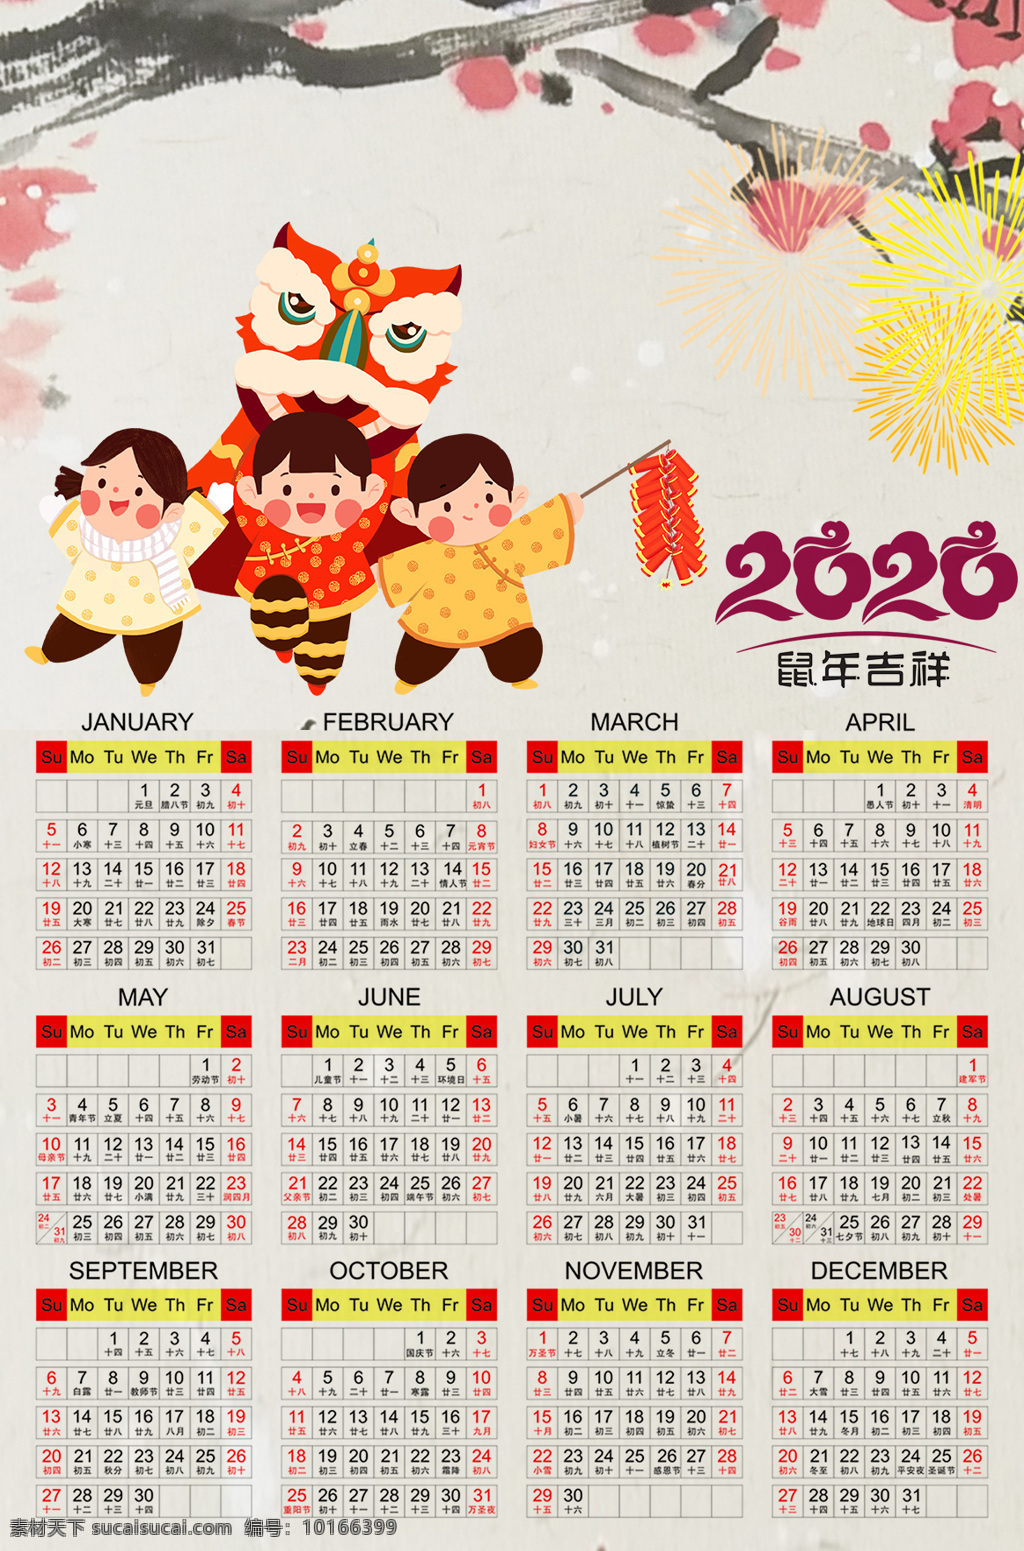 2020日历 2020 日历 新年 年历 鼠年大吉 文化艺术 节日庆祝